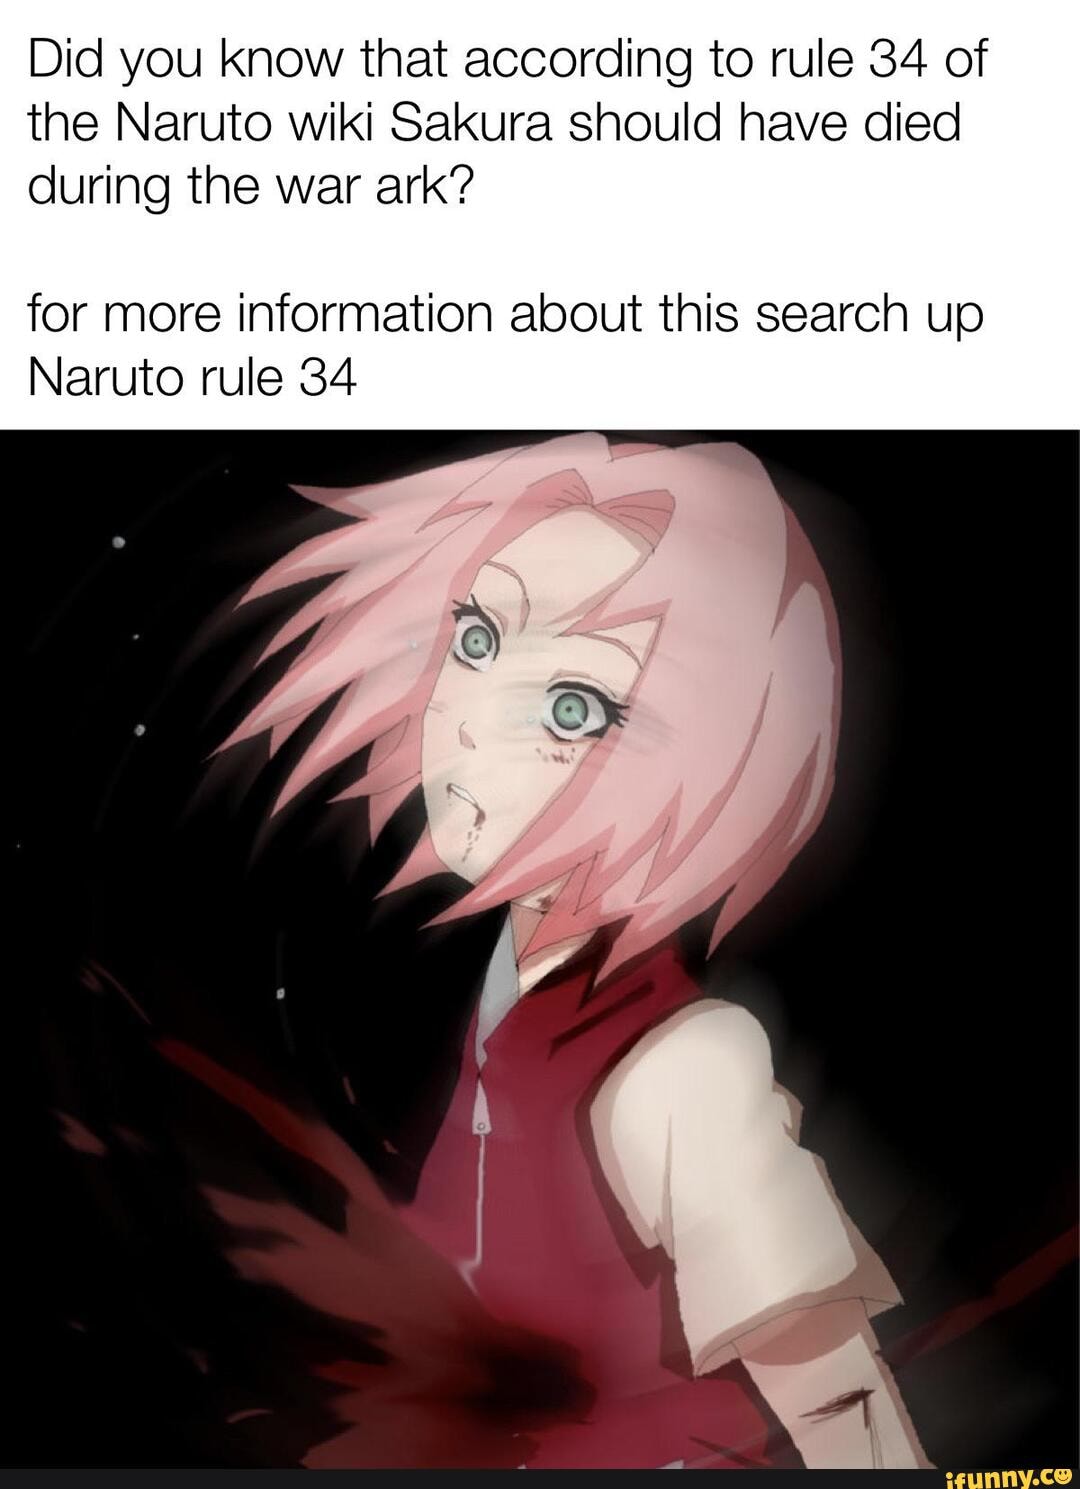 Sakura Haruno, Wiki